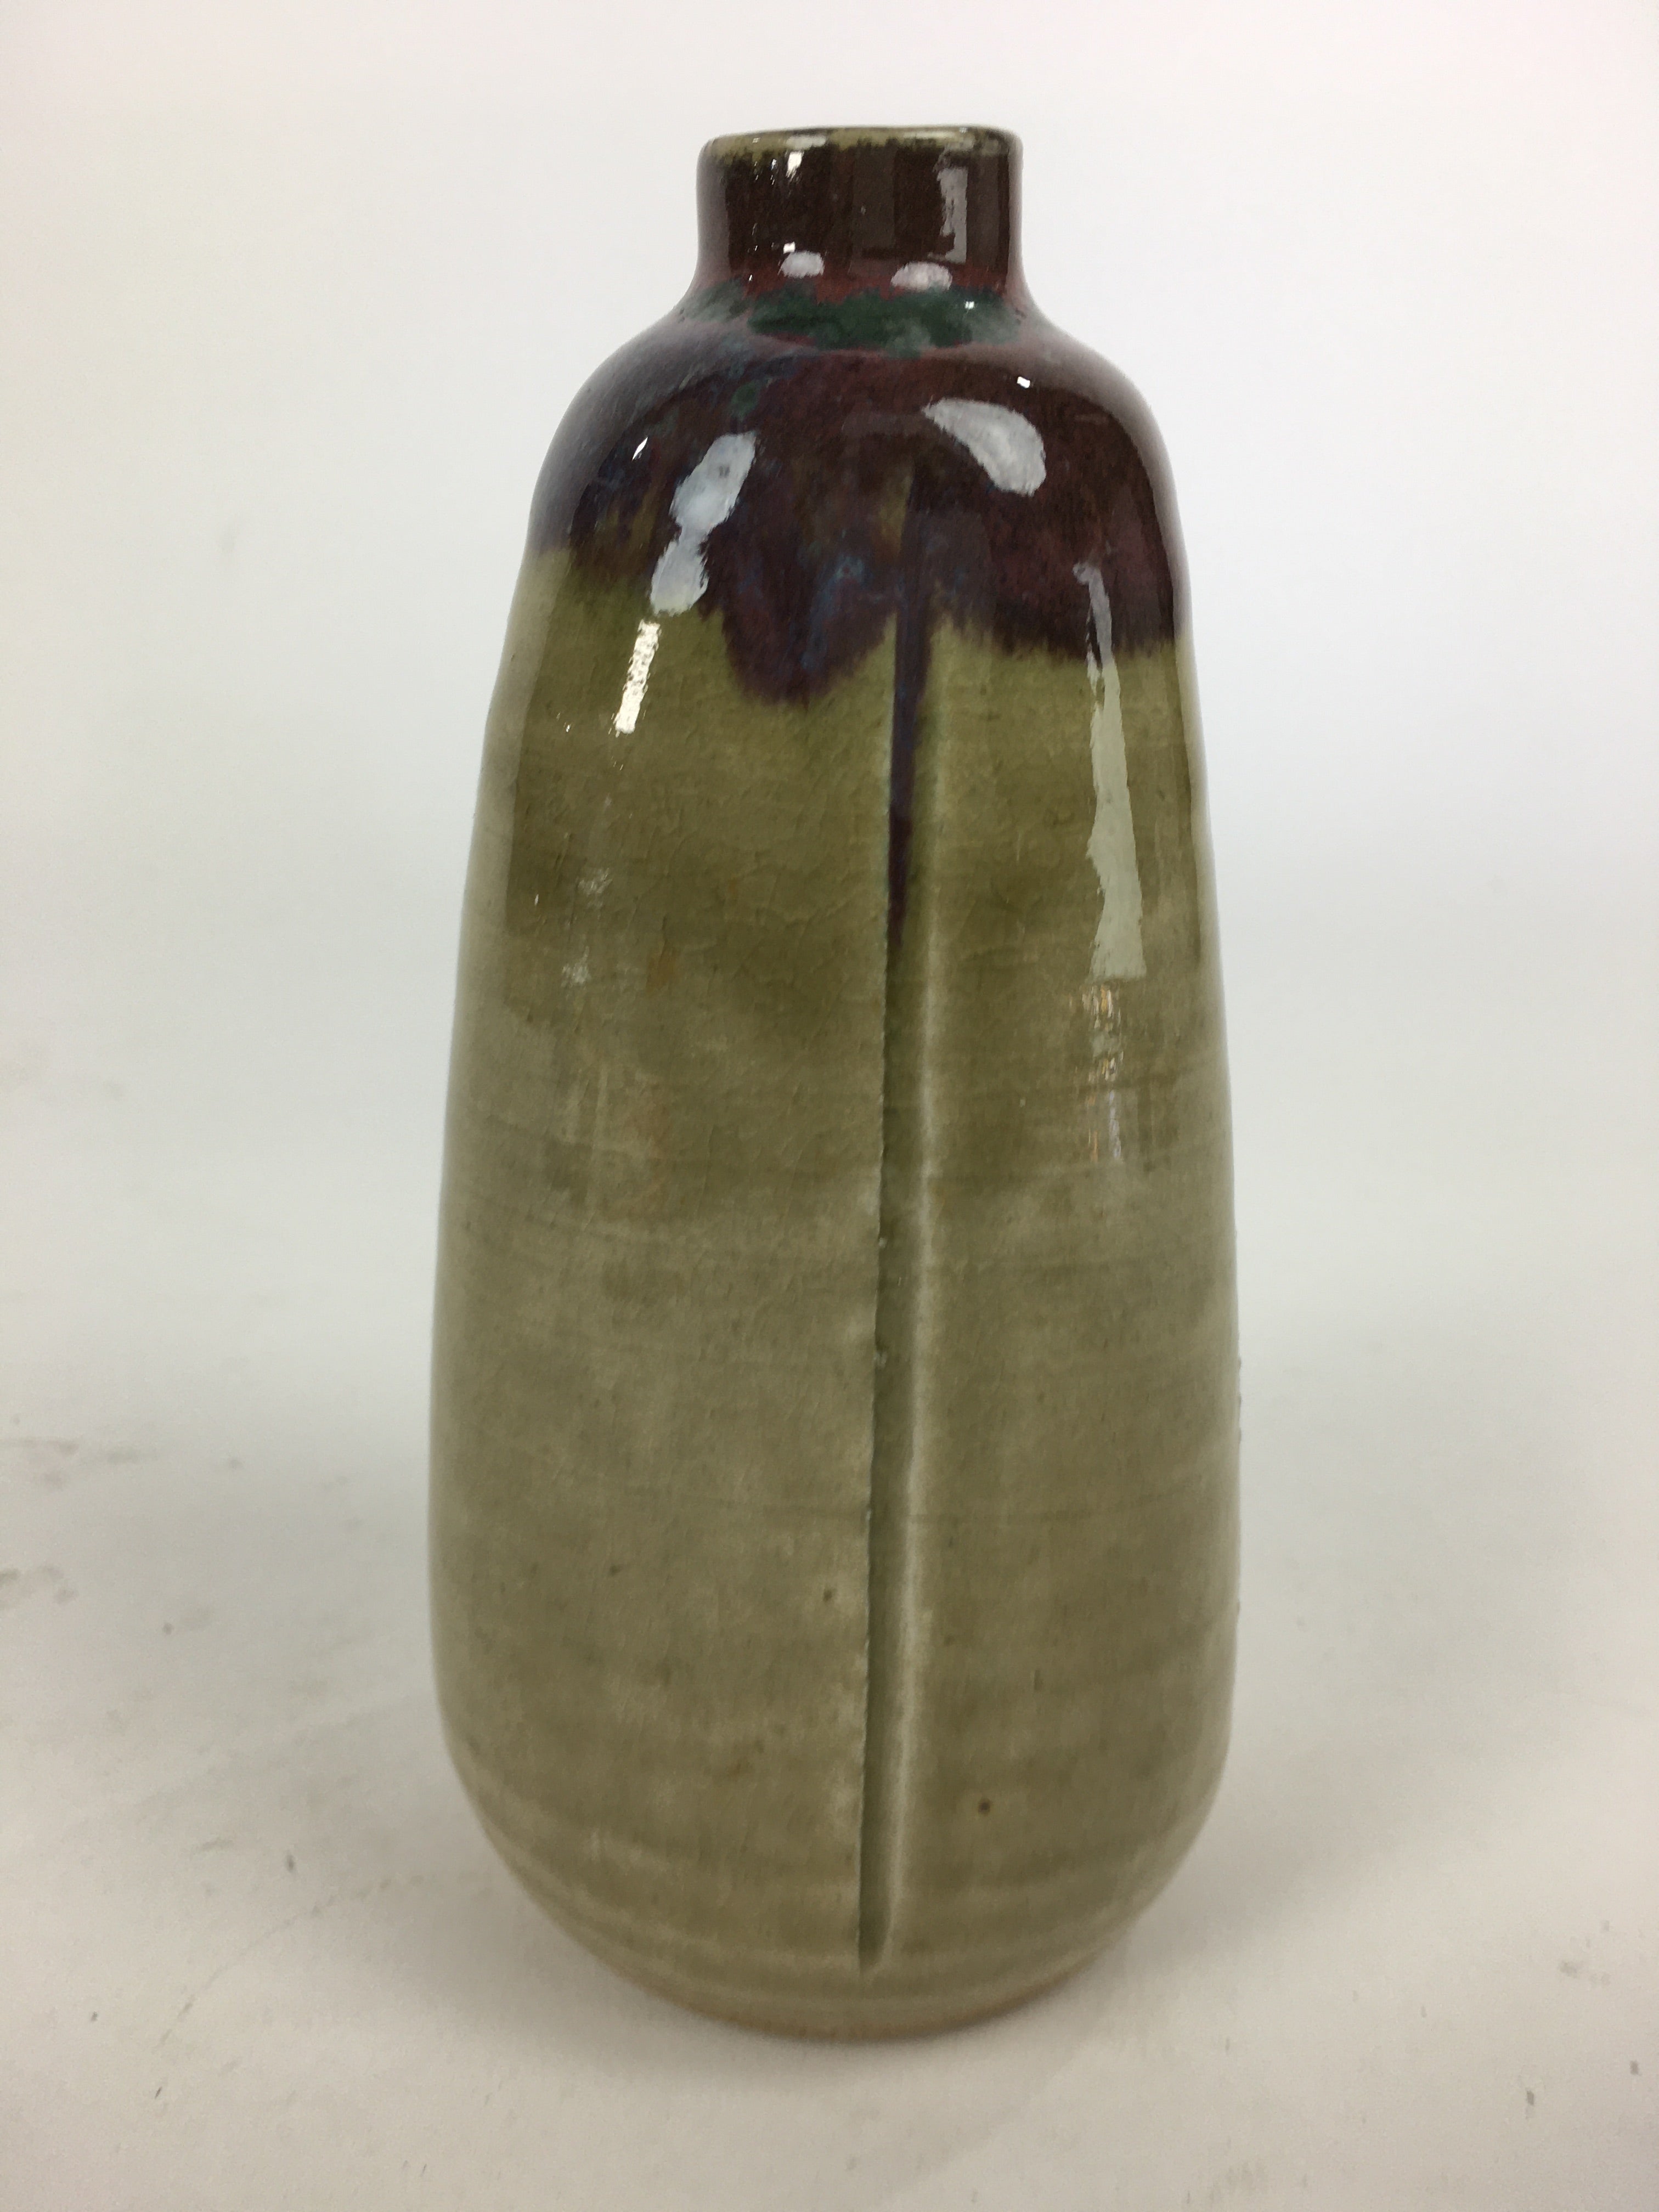 Japanese Ceramic Sake Bottle Vtg Pottery Yakimono Brown Poetry Tokkuri TS321